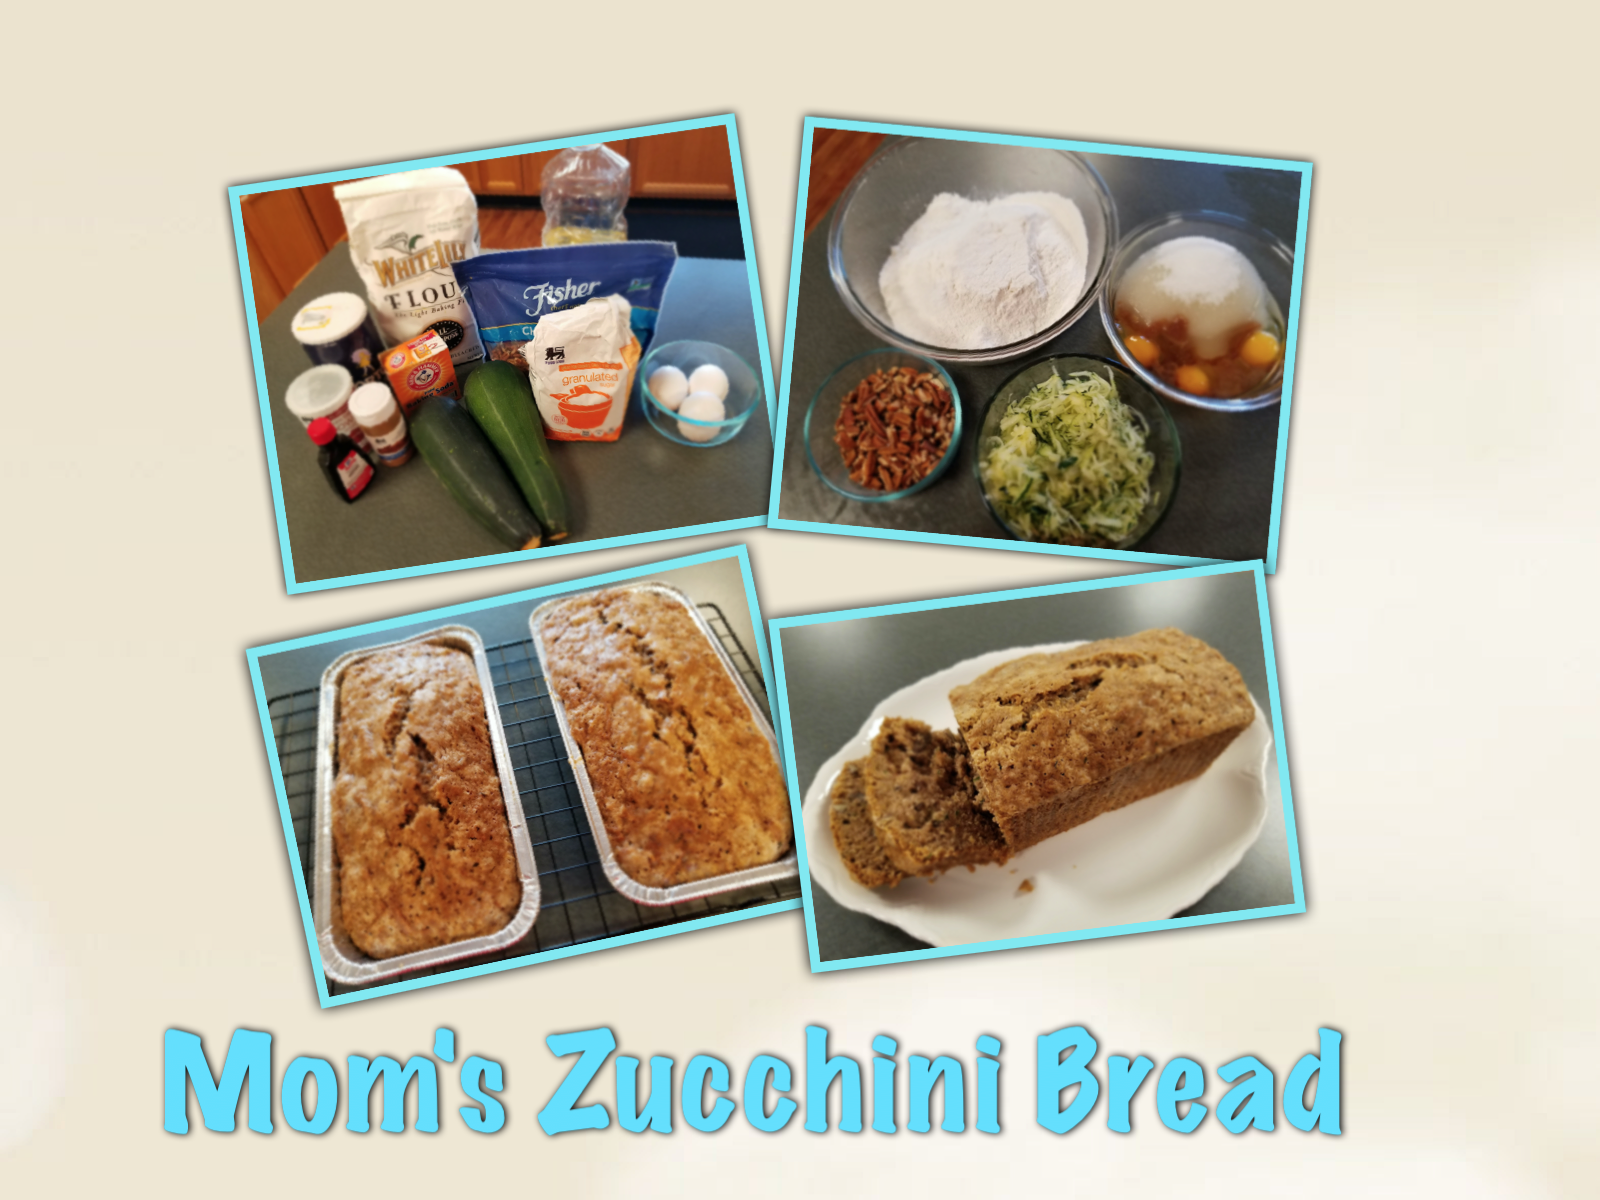 Zucchini bread